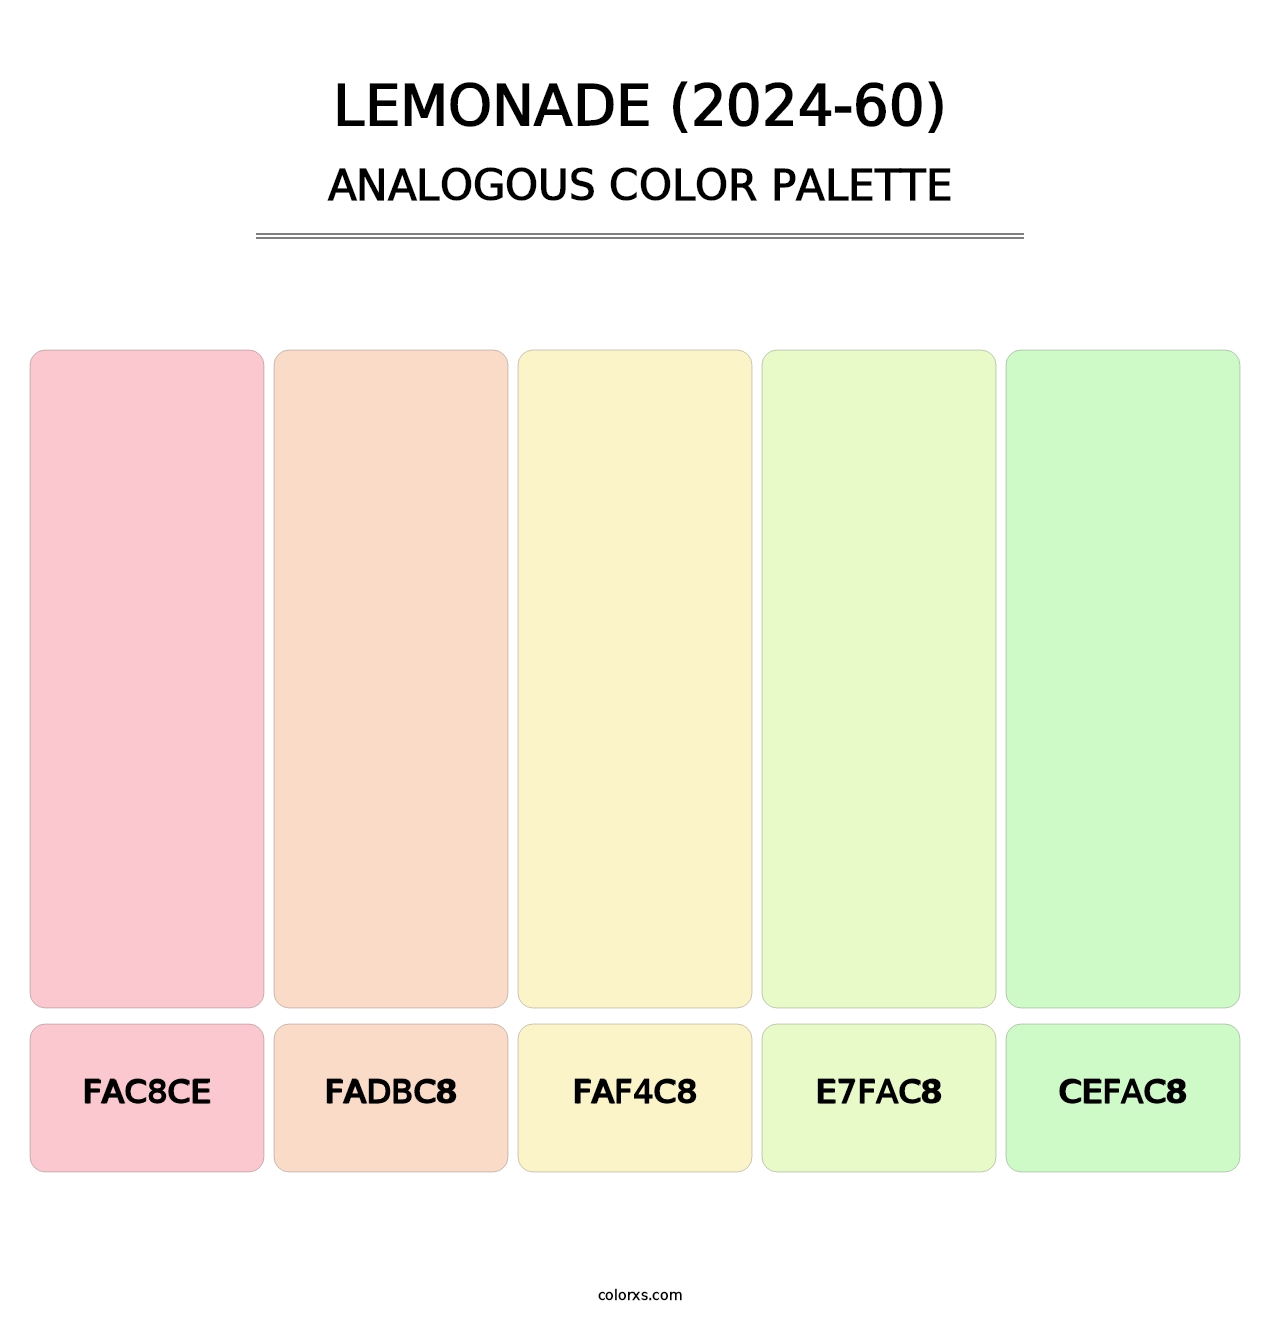 Lemonade (2024-60) - Analogous Color Palette